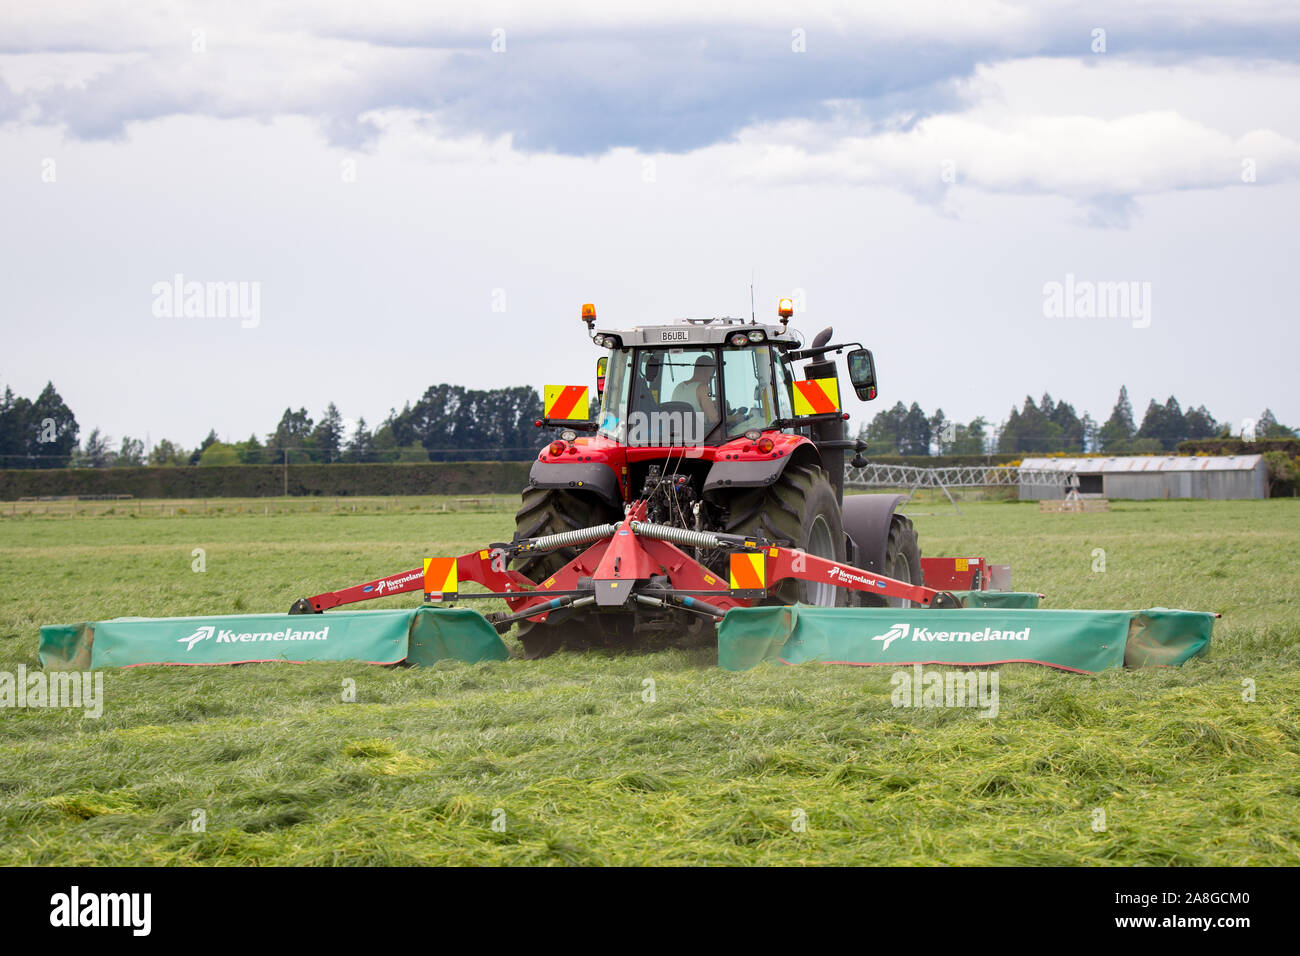 Canterbury, Nouvelle-Zélande, le 9 novembre 2019 : Un tracteur Massey Ferguson et faucheuse Kverneland coupé de l'herbe pour l'ensilage sur une ferme rurale Banque D'Images